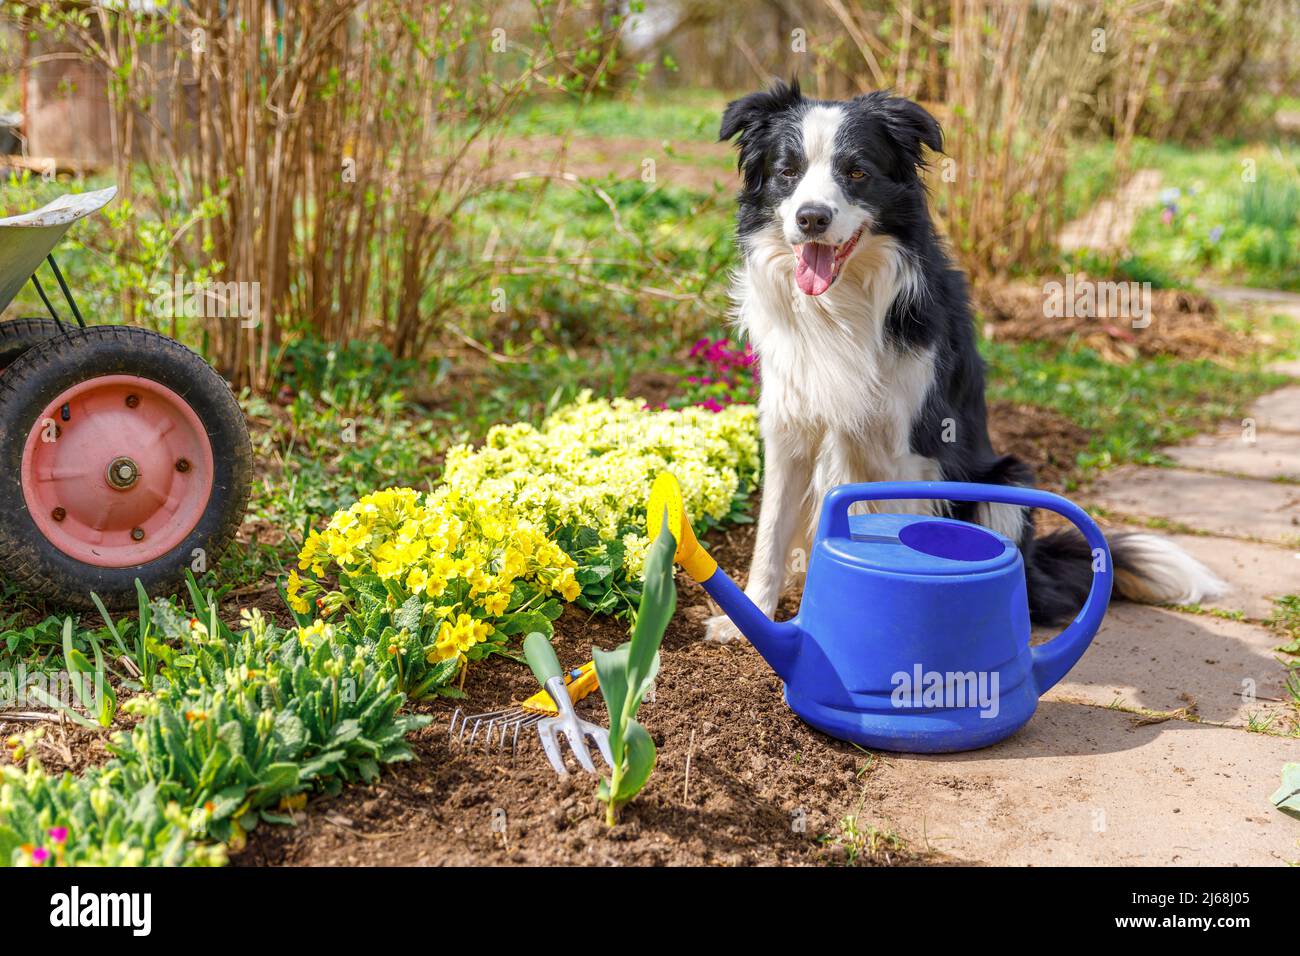 Outdoor-Porträt von niedlichen Hund Grenze Collie mit Gießkannen im Garten Hintergrund. Lustige Welpen Hund als Gärtner holen Gießkannen für die Bewässerung. Gartenbau und Landwirtschaft Konzept Stockfoto